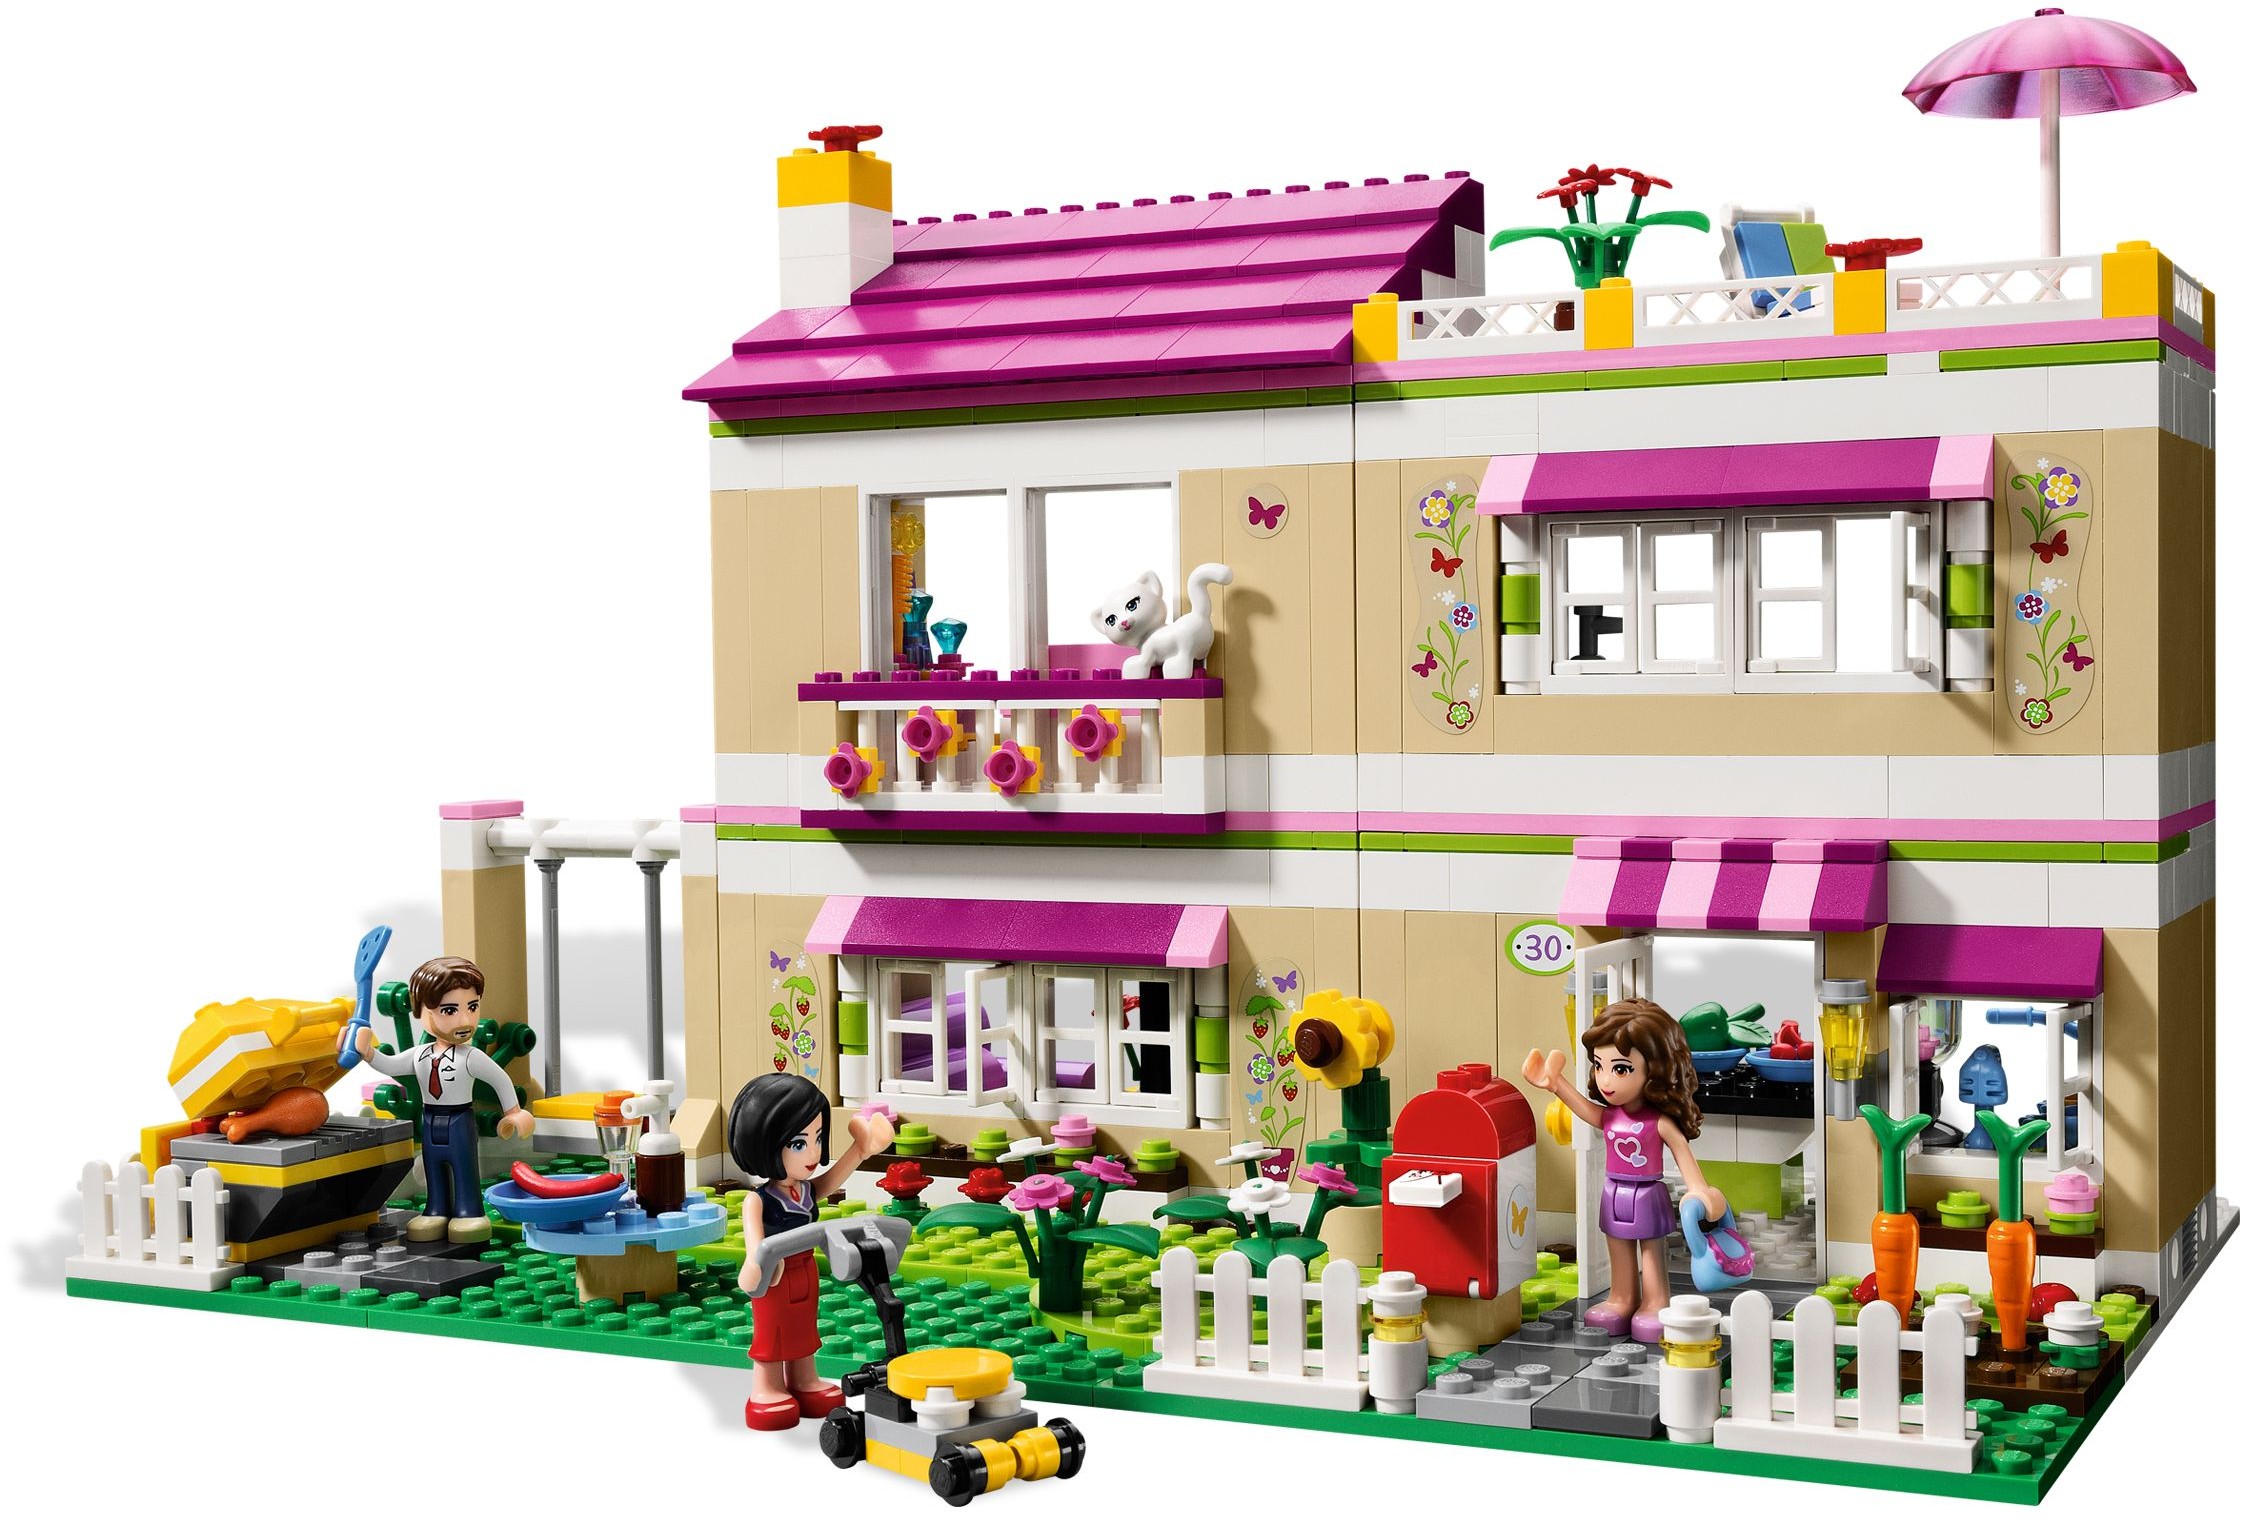 Perfekt Afsnit vedholdende LEGO Friends | Brickset